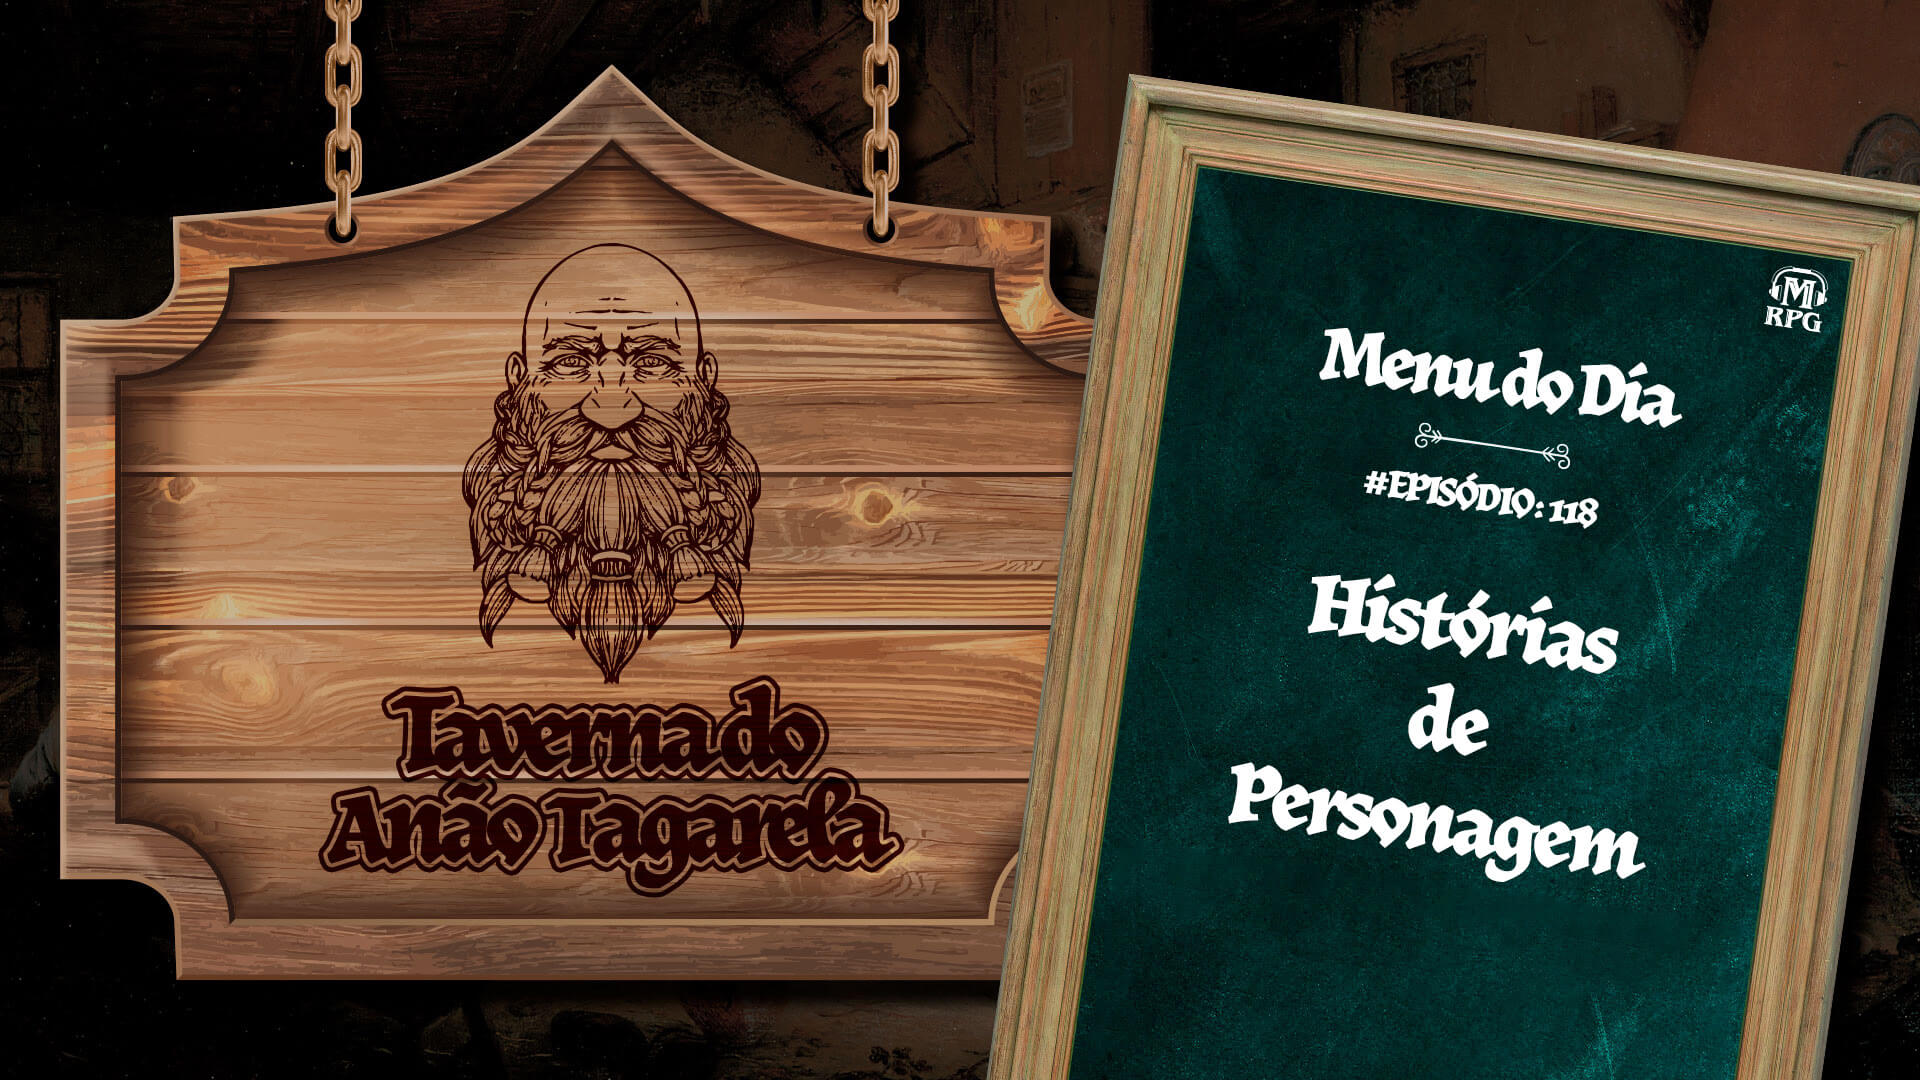 Histórias de Personagem - Taverna do Anão Tagarela #118